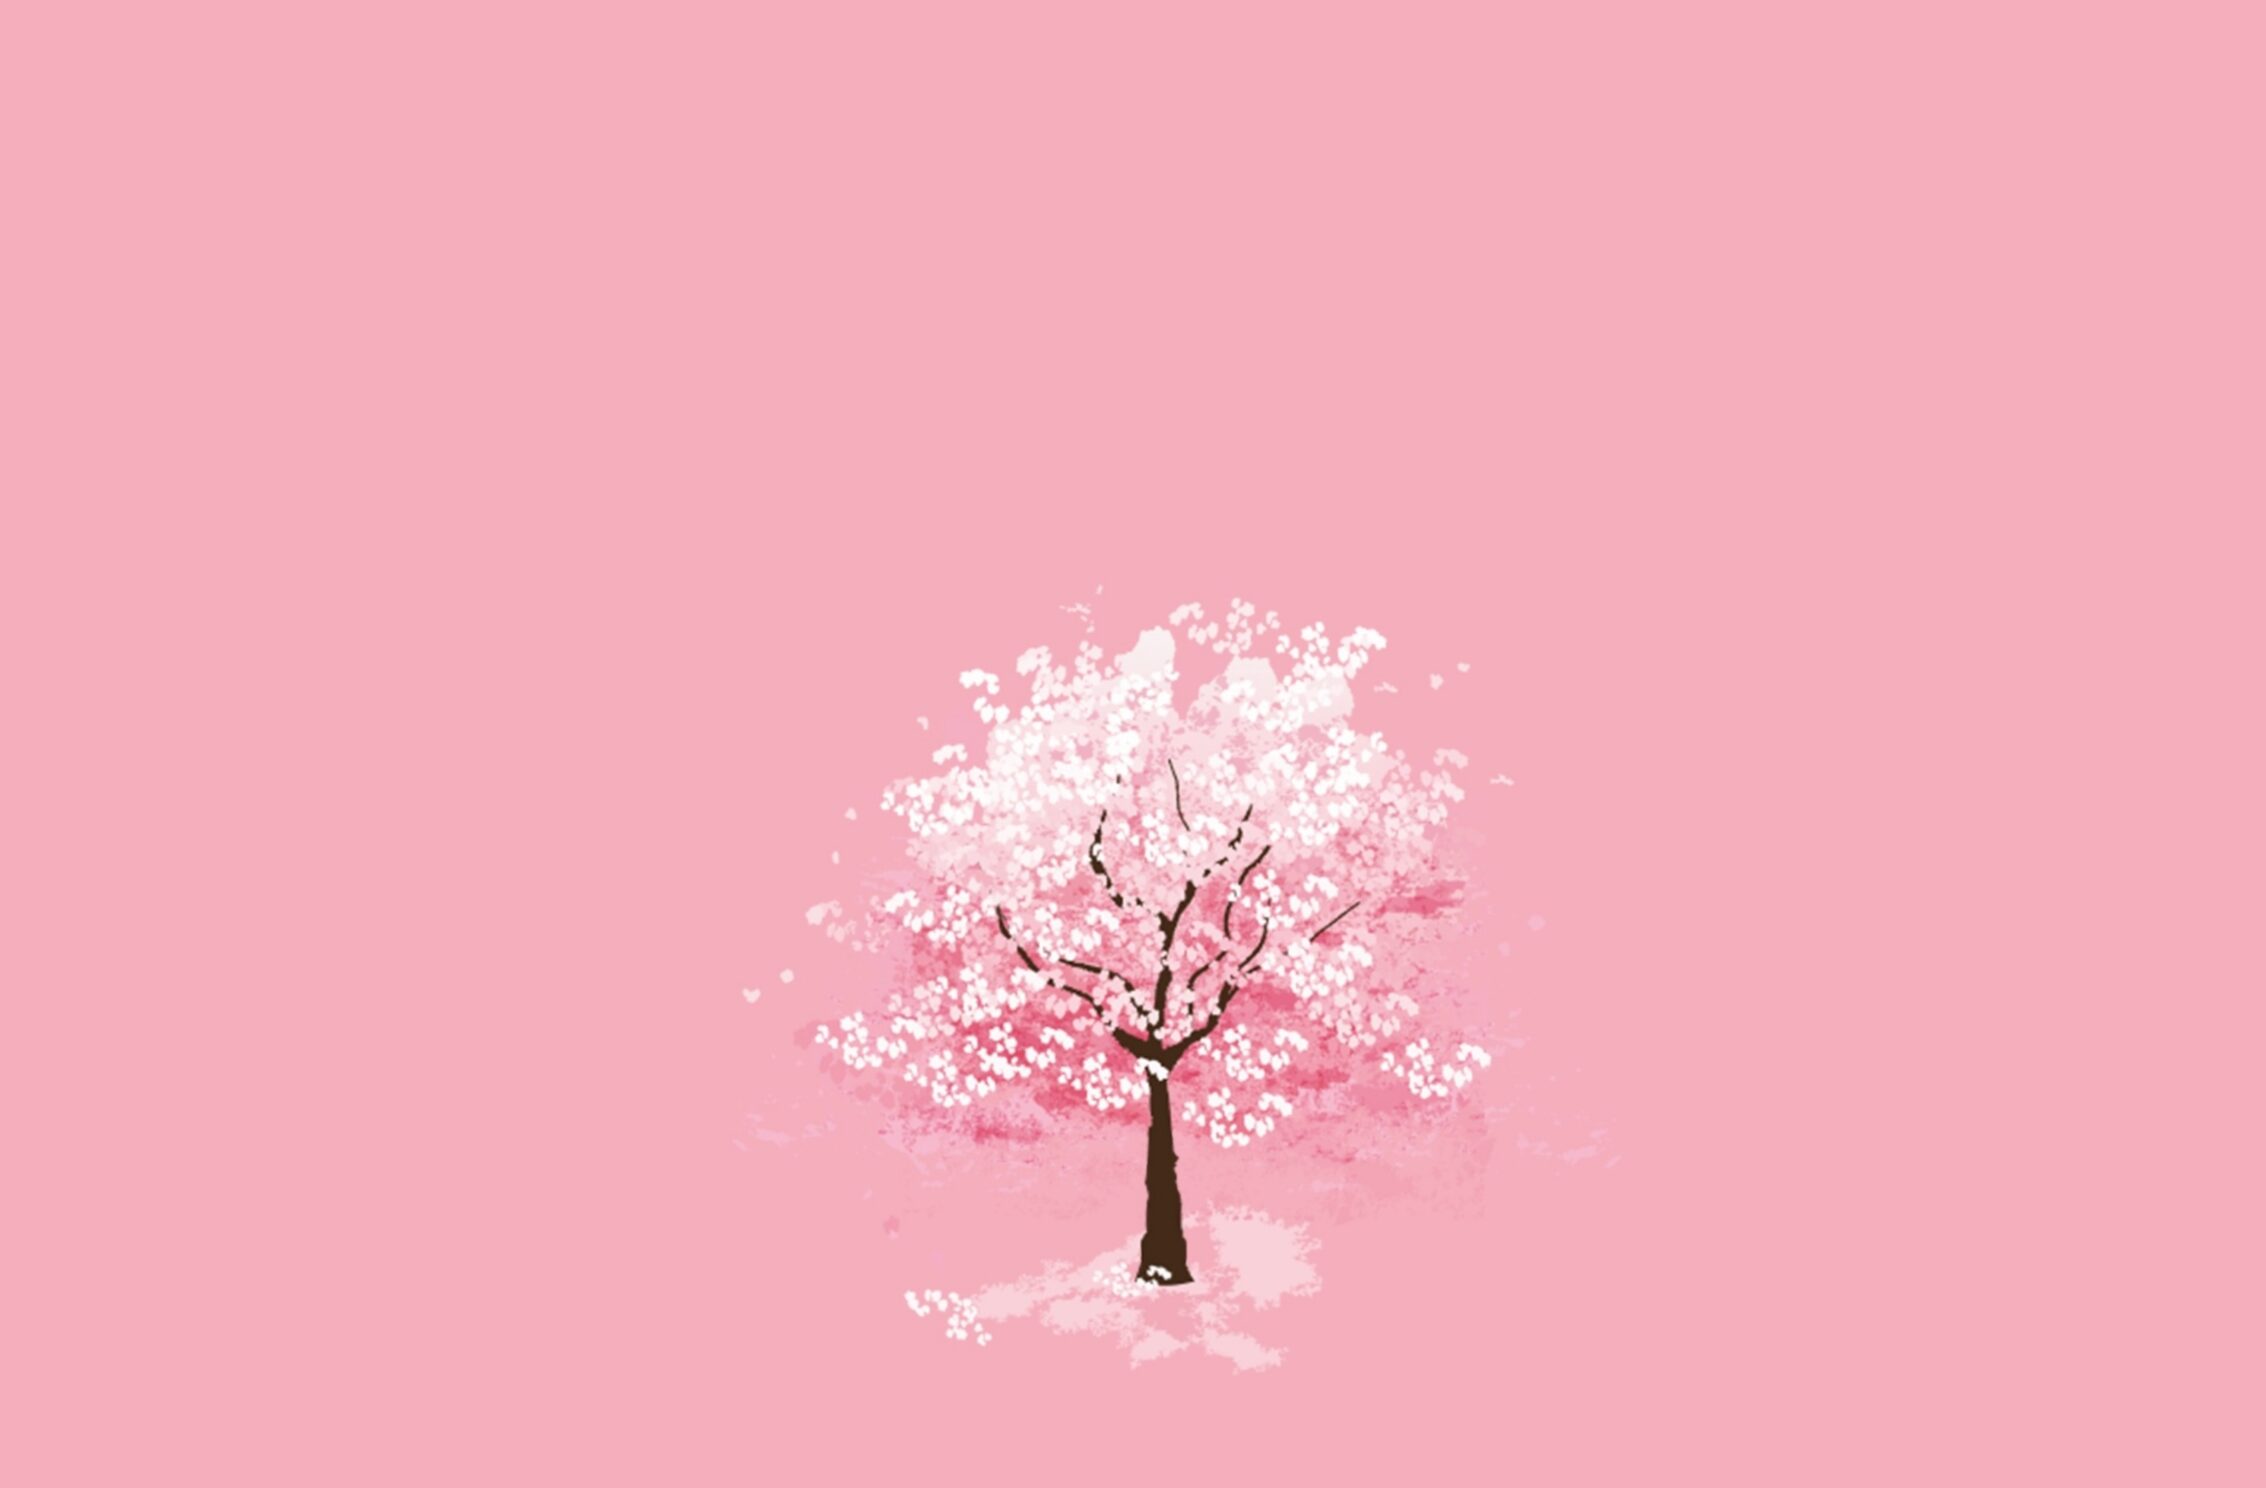 2266x1488 iPad Mini wallpapers Winter Season Tree Pink Background iPad Wallpaper 2266x1488 pixels resolution